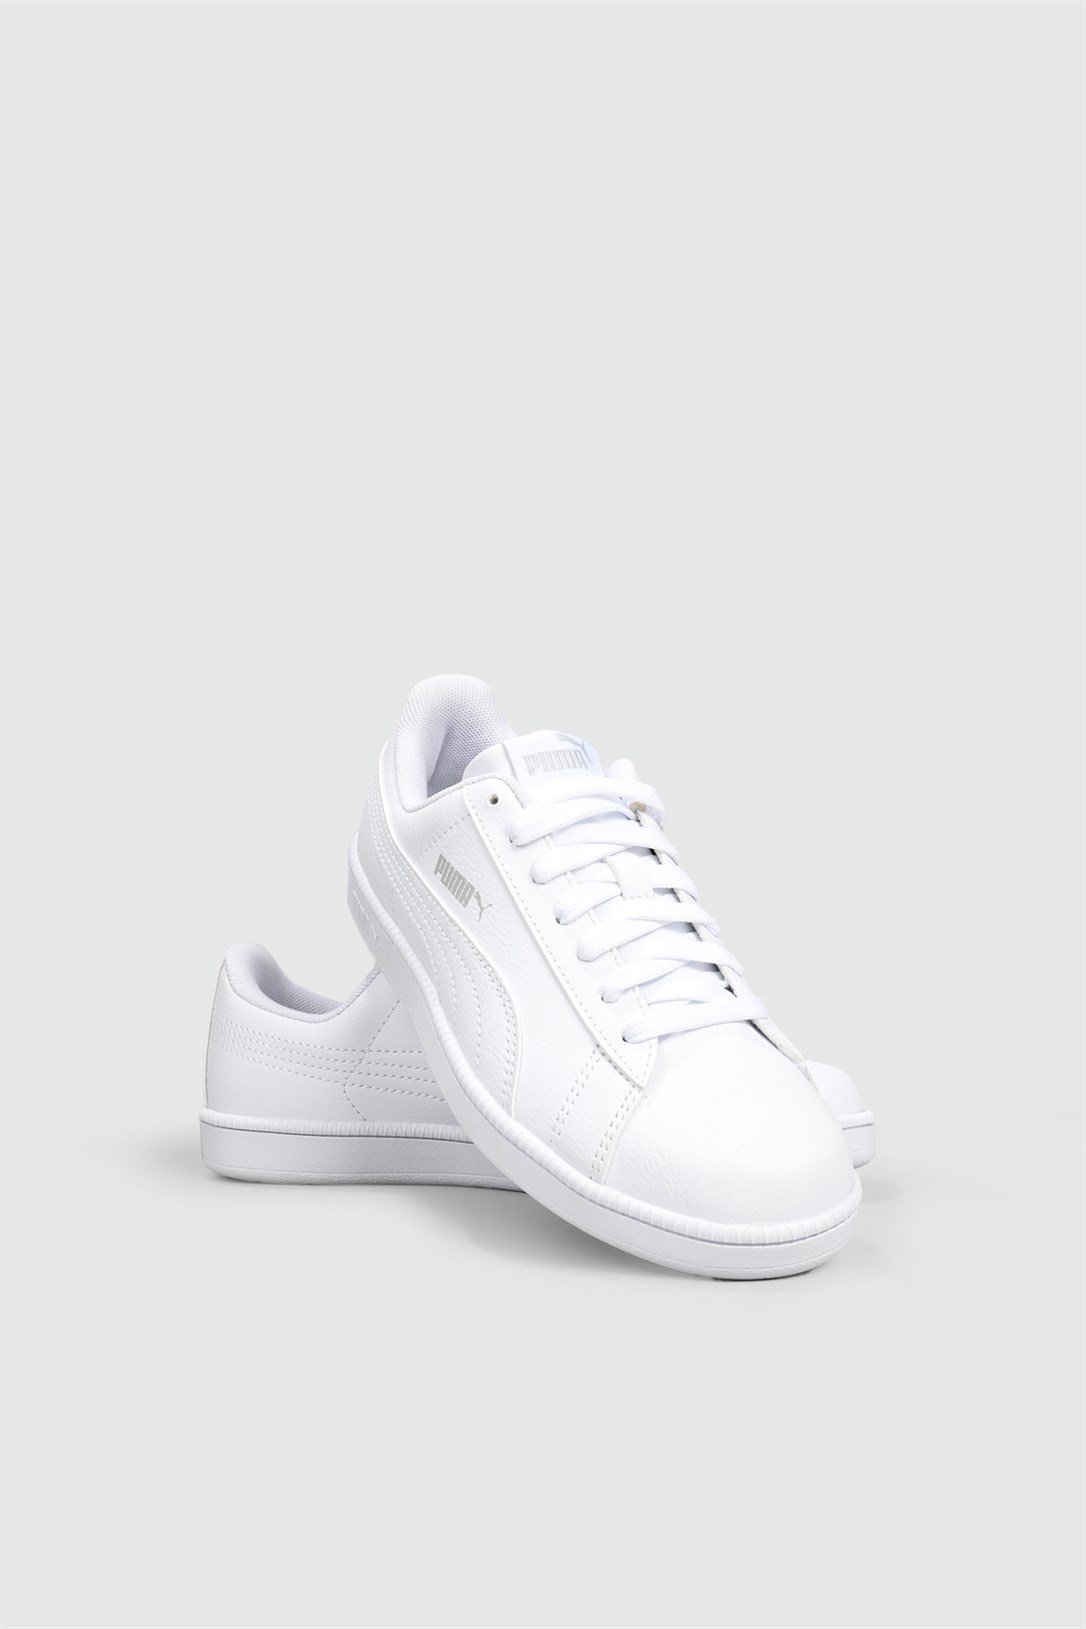 Puma Günlük Rahat Bağcıklı Beyaz Beyaz Unisex Spor Ayakkabı 373600-04 |  Ayakkabı City